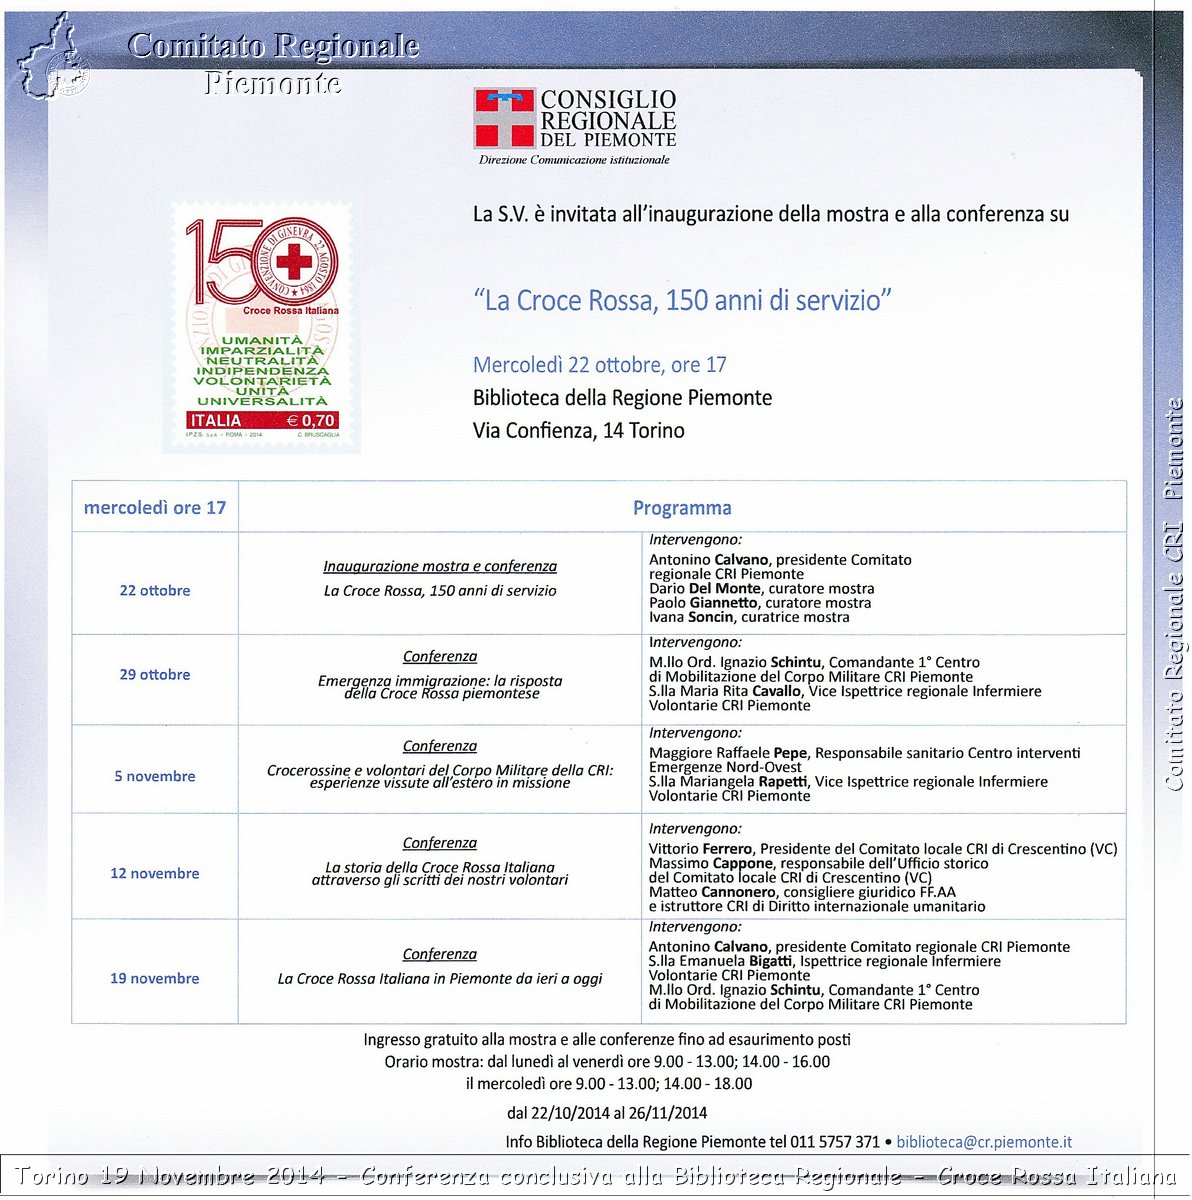 Torino 19 Novembre 2014 - Conferenza conclusiva alla Biblioteca Regionale - Croce Rossa Italiana- Comitato Regionale del Piemonte